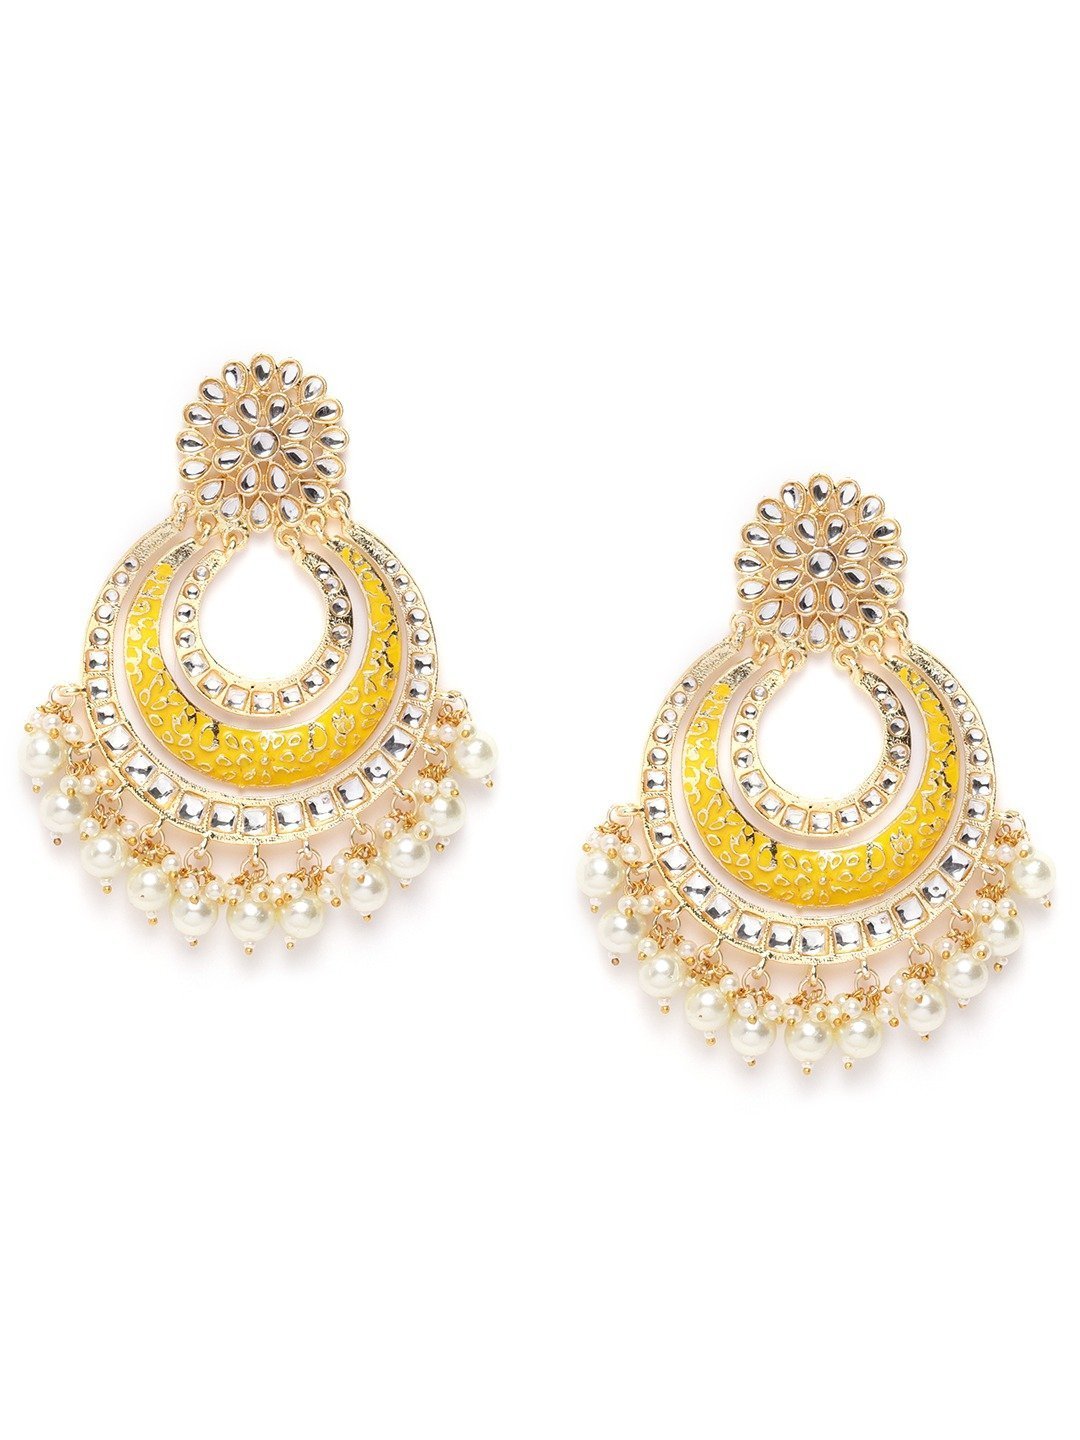 Women Kundan Chandbali Earrings by Priyaasi (1 Pair earrings)